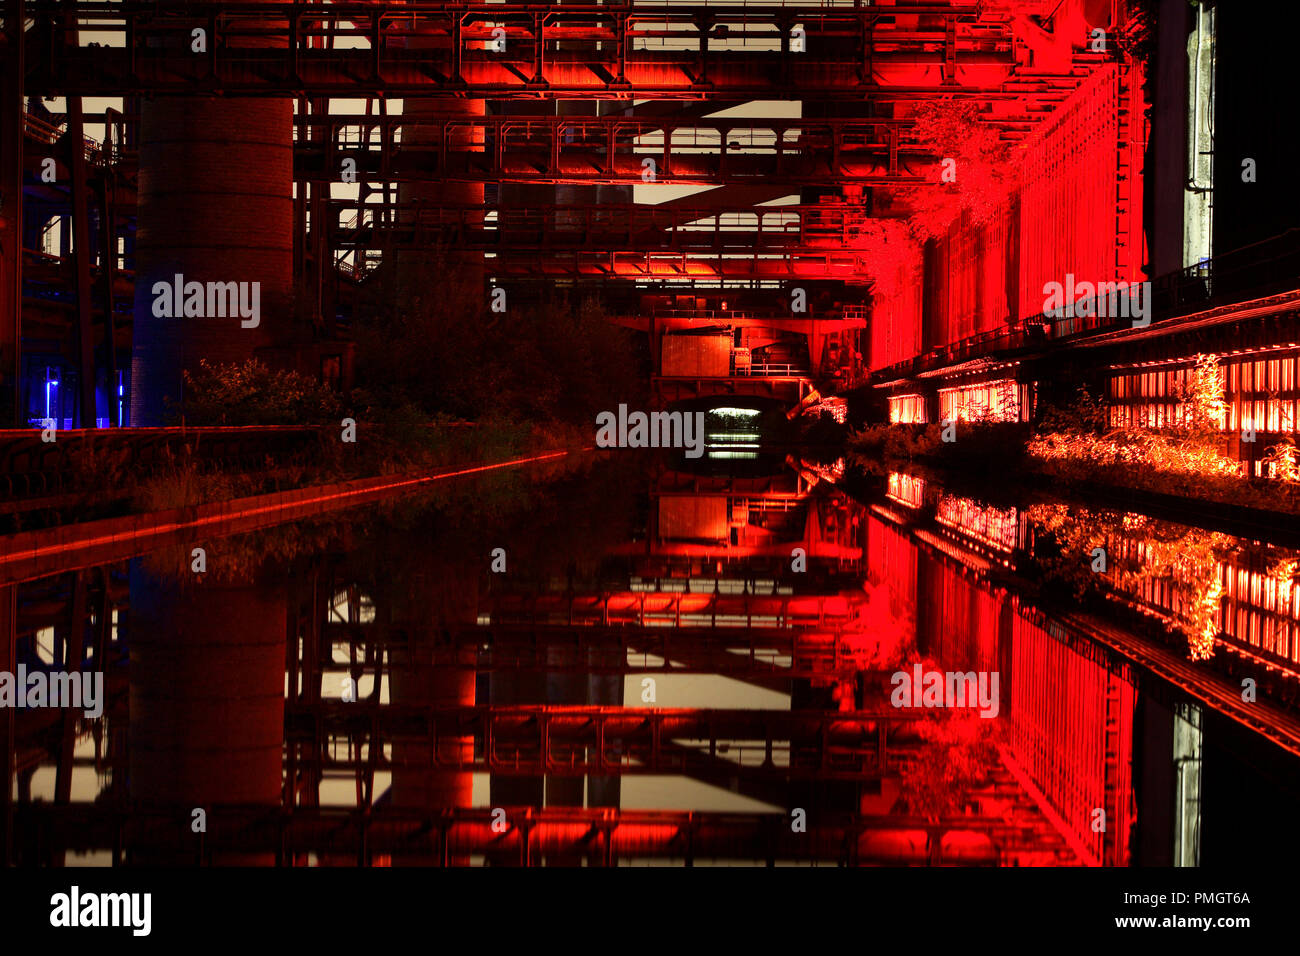 Kokarei de la mine Zollverein le patrimoine culturel à Essen. Avec l'apparition du crépuscule, la construction d'ensembles d'éclairage dans le contexte industriel et plonge dans la lumière rouge. Banque D'Images